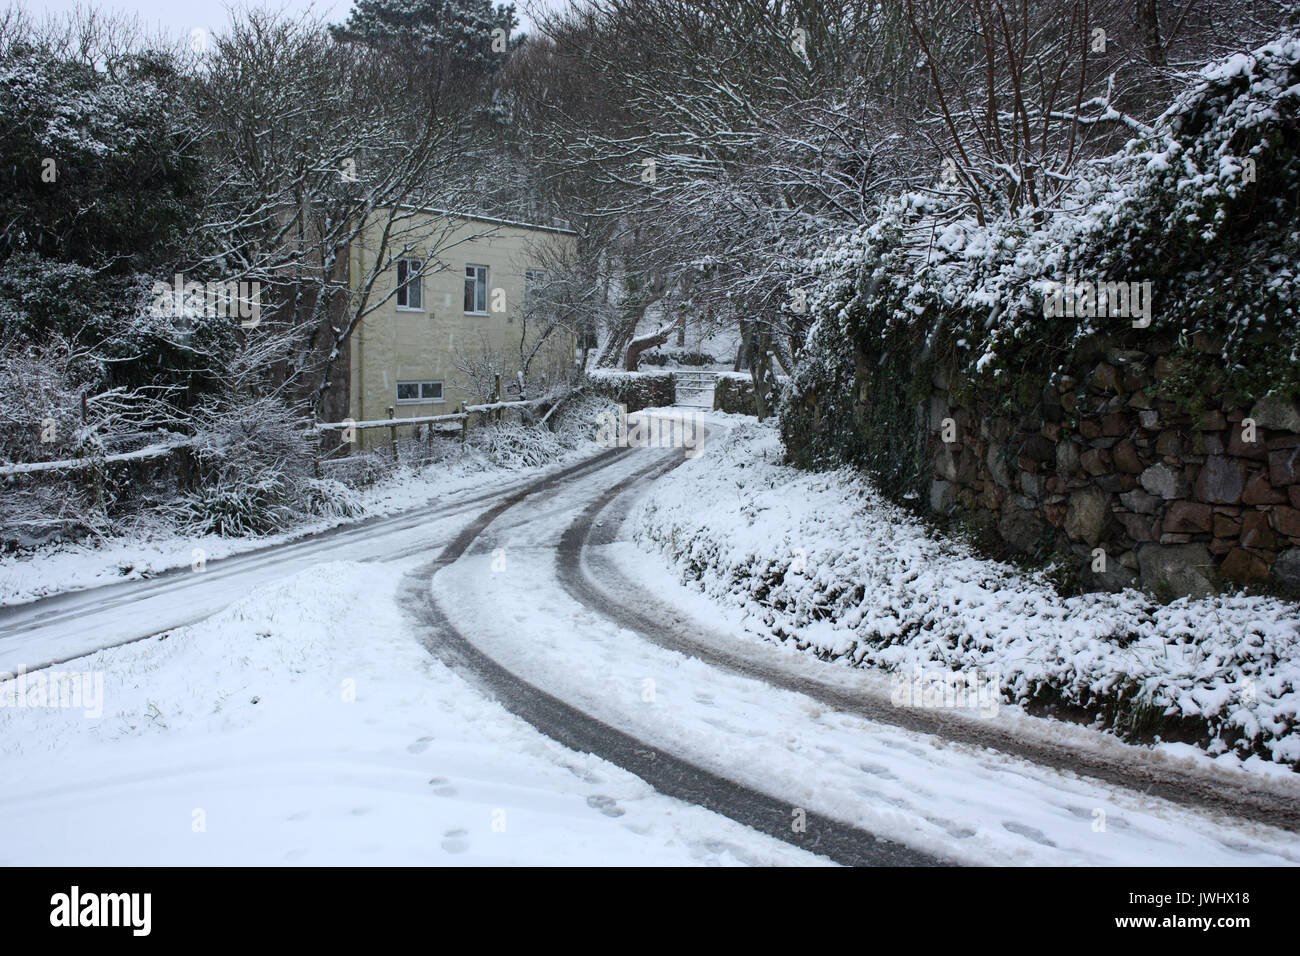 Îles Anglo-Normandes. L'Alderney. Scène d'hiver de neige-couvertes et cottage country lane. Banque D'Images